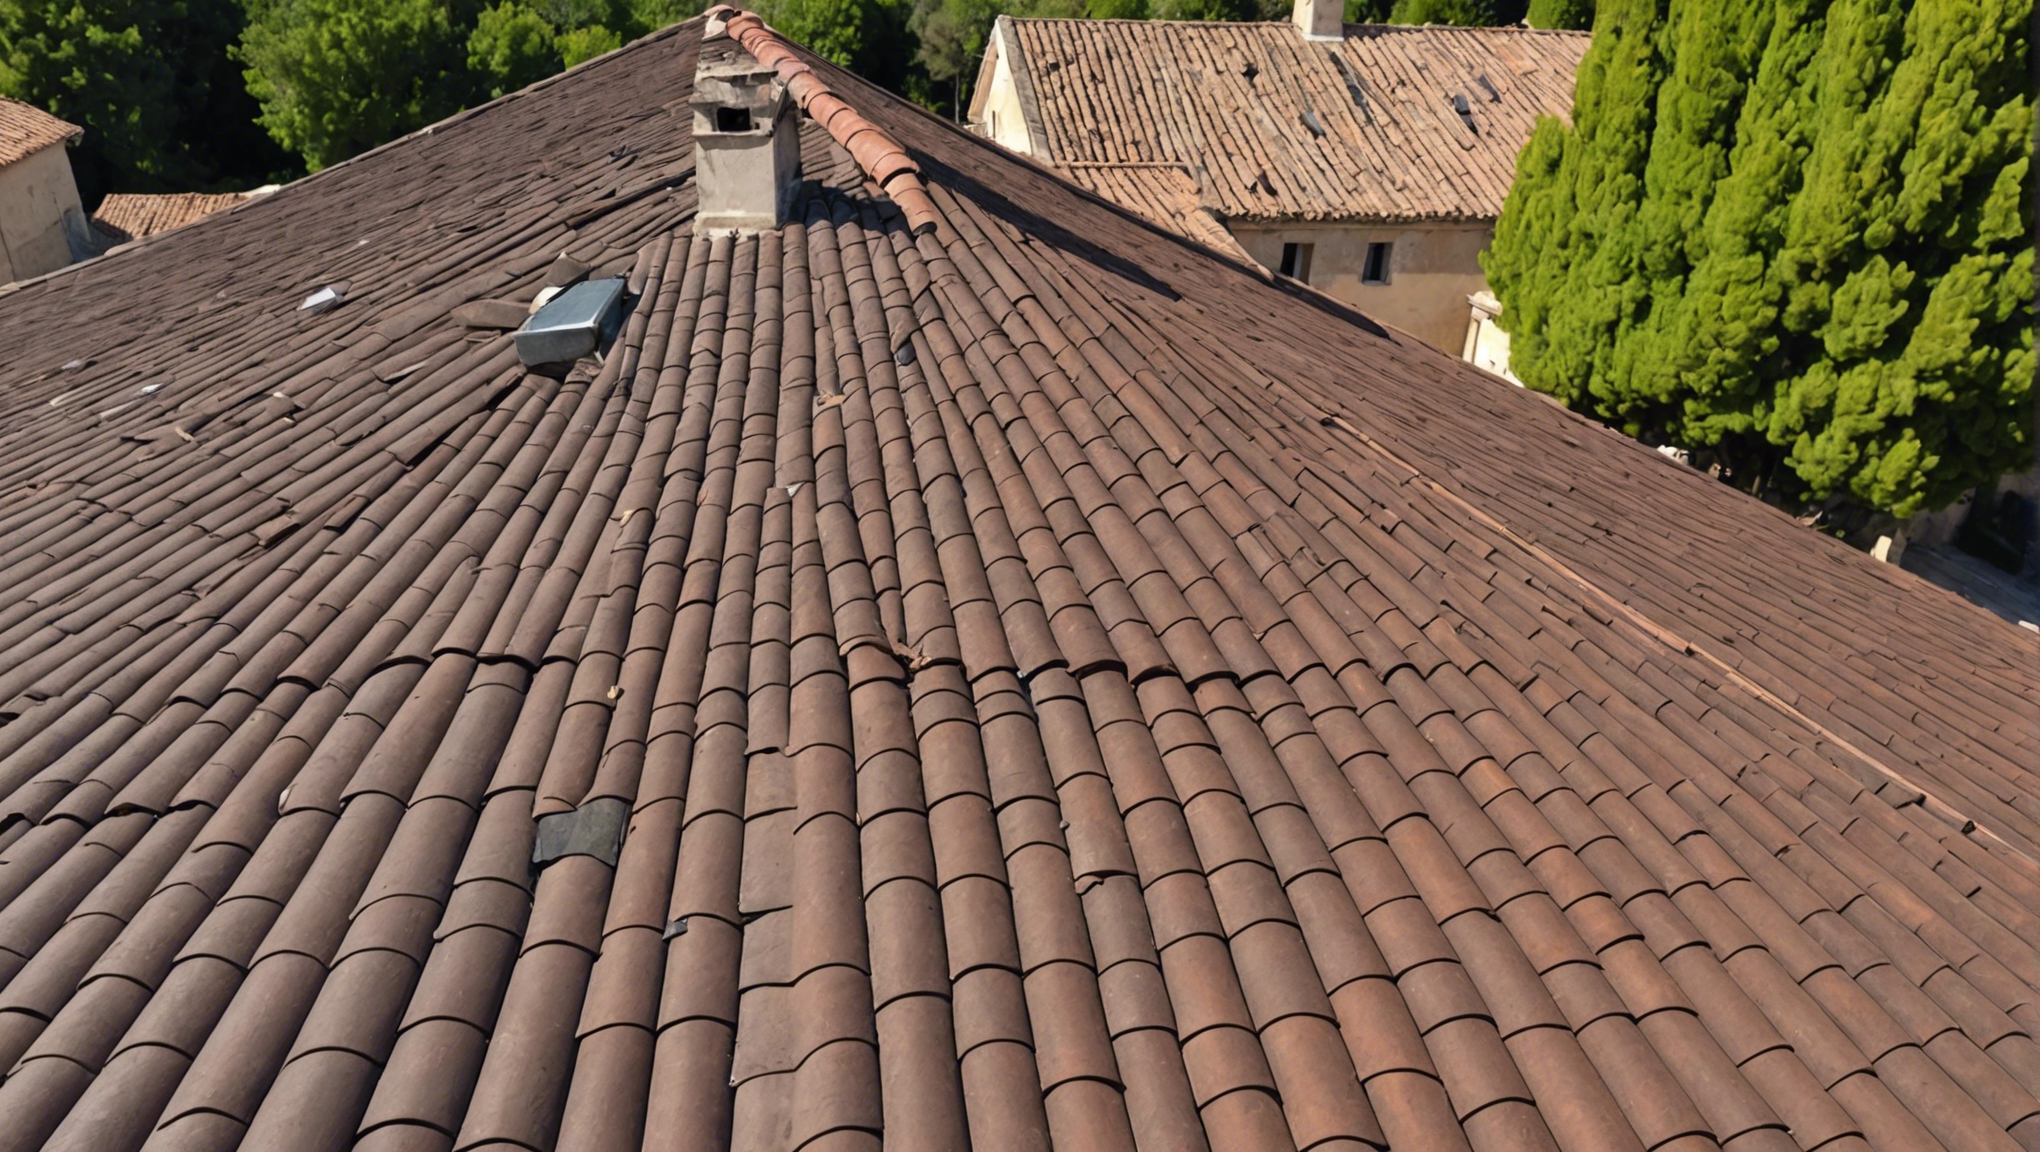 trouvez un devis pour votre toiture à nîmes avec notre service professionnel. obtenez des estimations précises et des conseils pour vos projets de toiture.